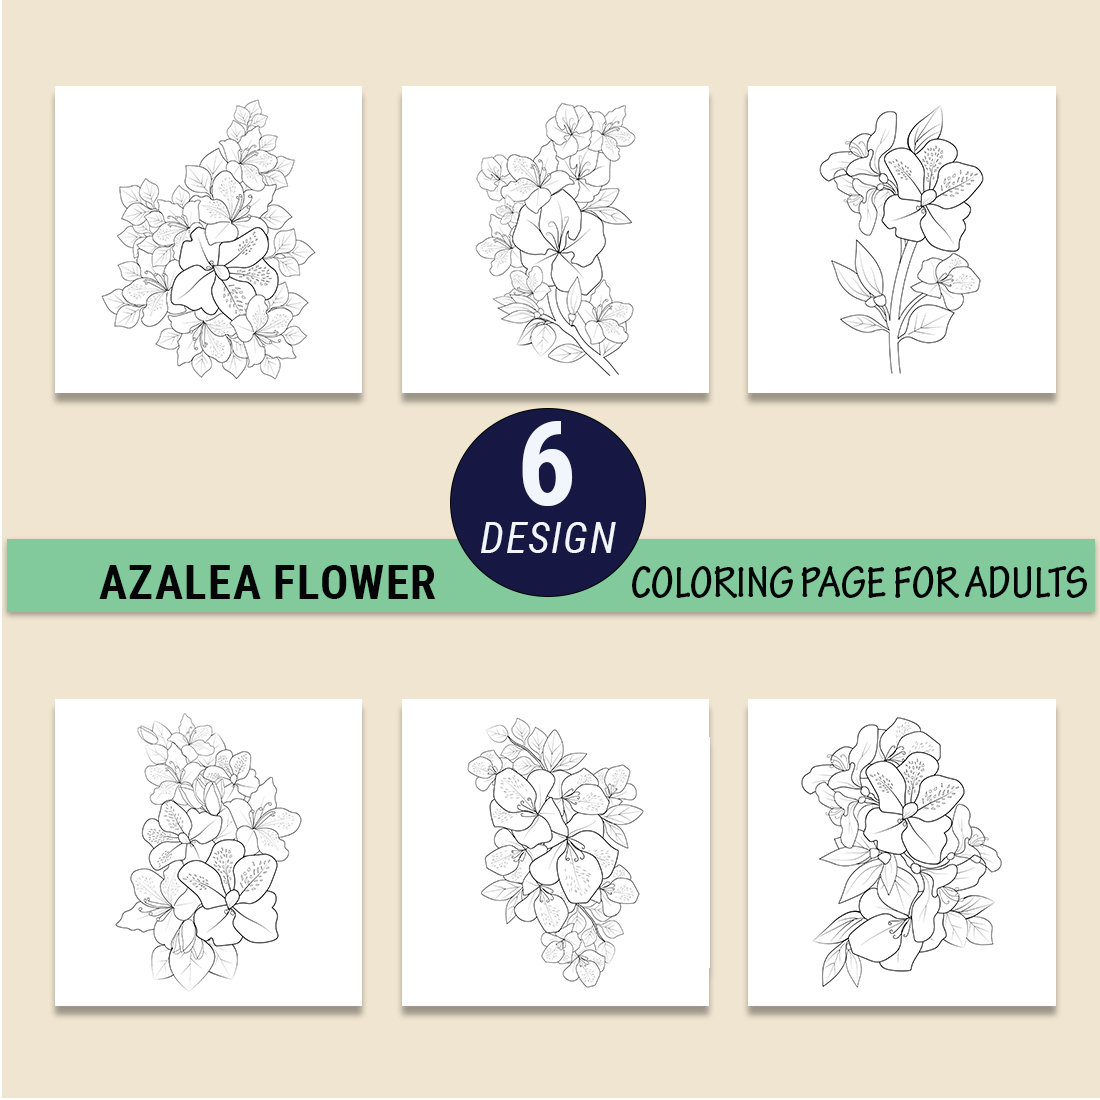 zalea flower drawing, azalea bush drawing, azalea flower outline, realistic azalea flower drawing preview image.